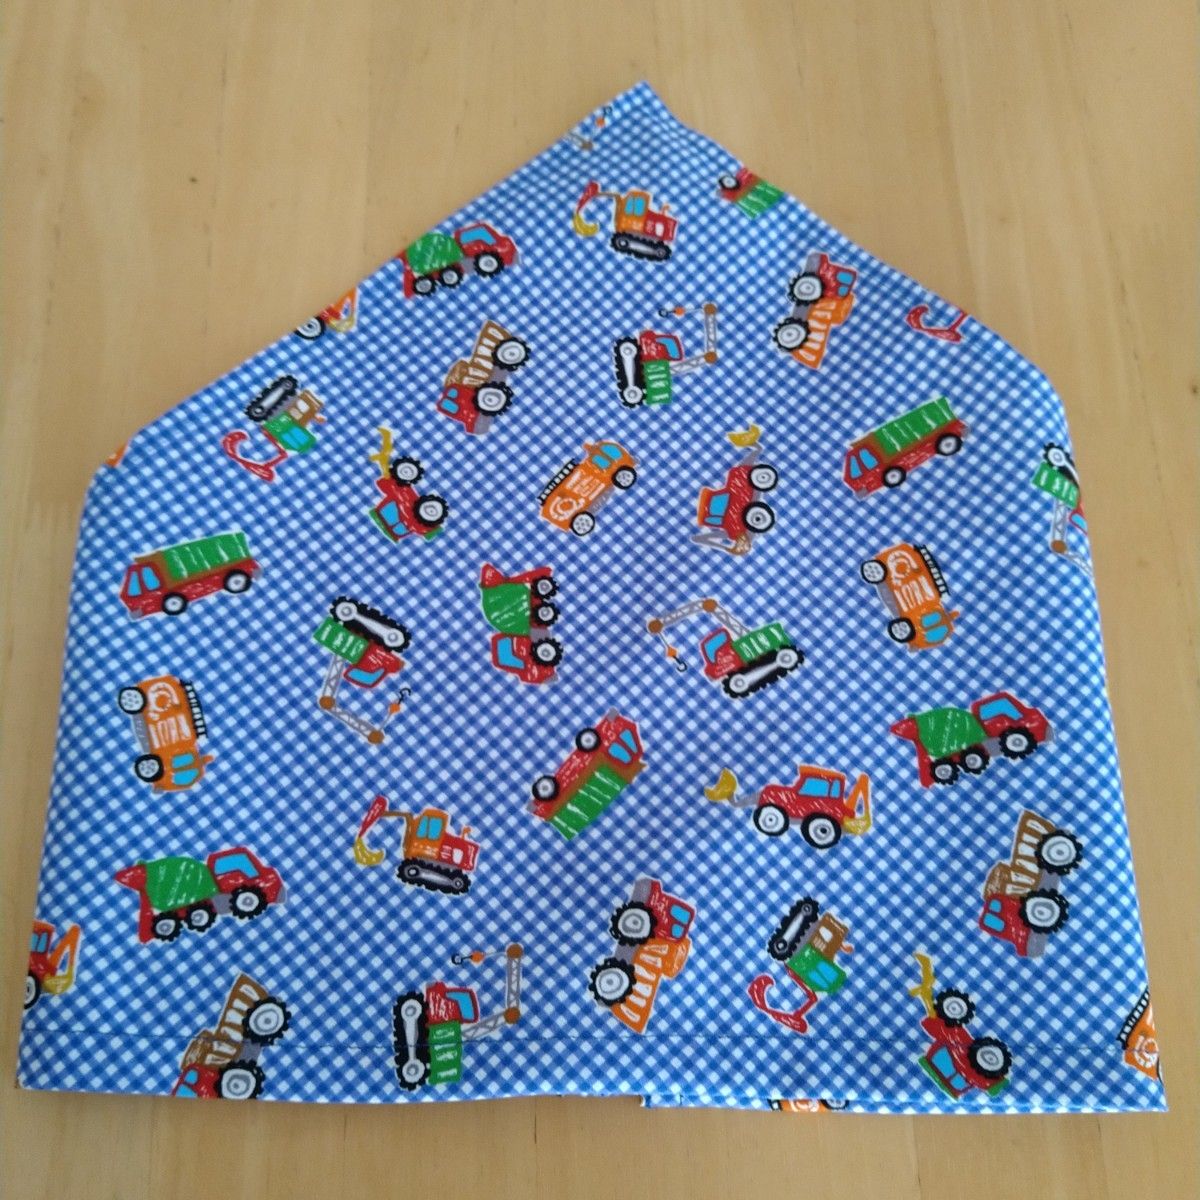 ハンドメイド子供用三角巾小さめサイズ